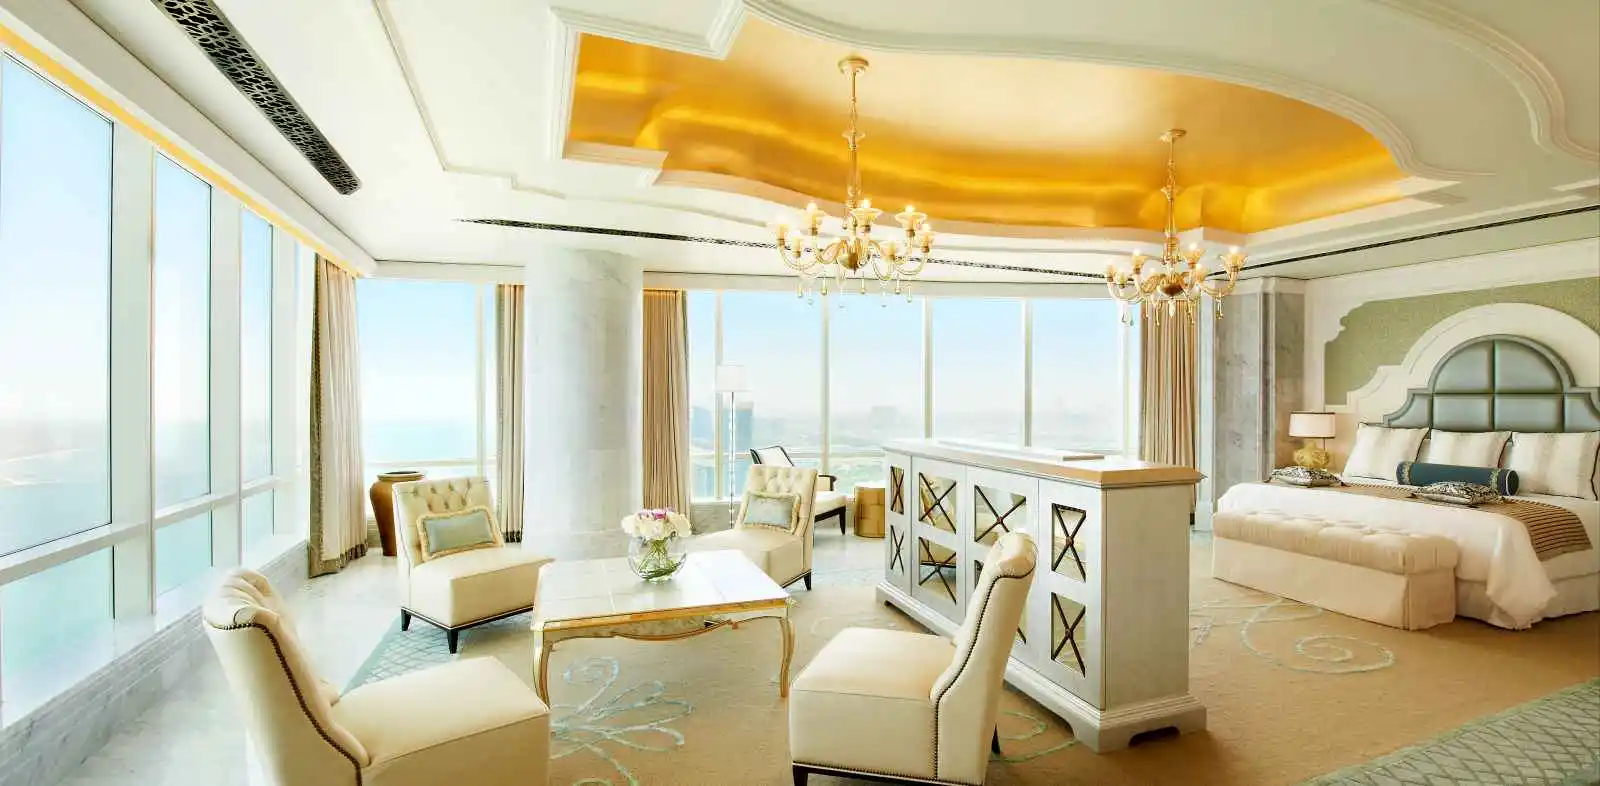 Al Manhal Suite, The St. Regis, Abou Dhabi